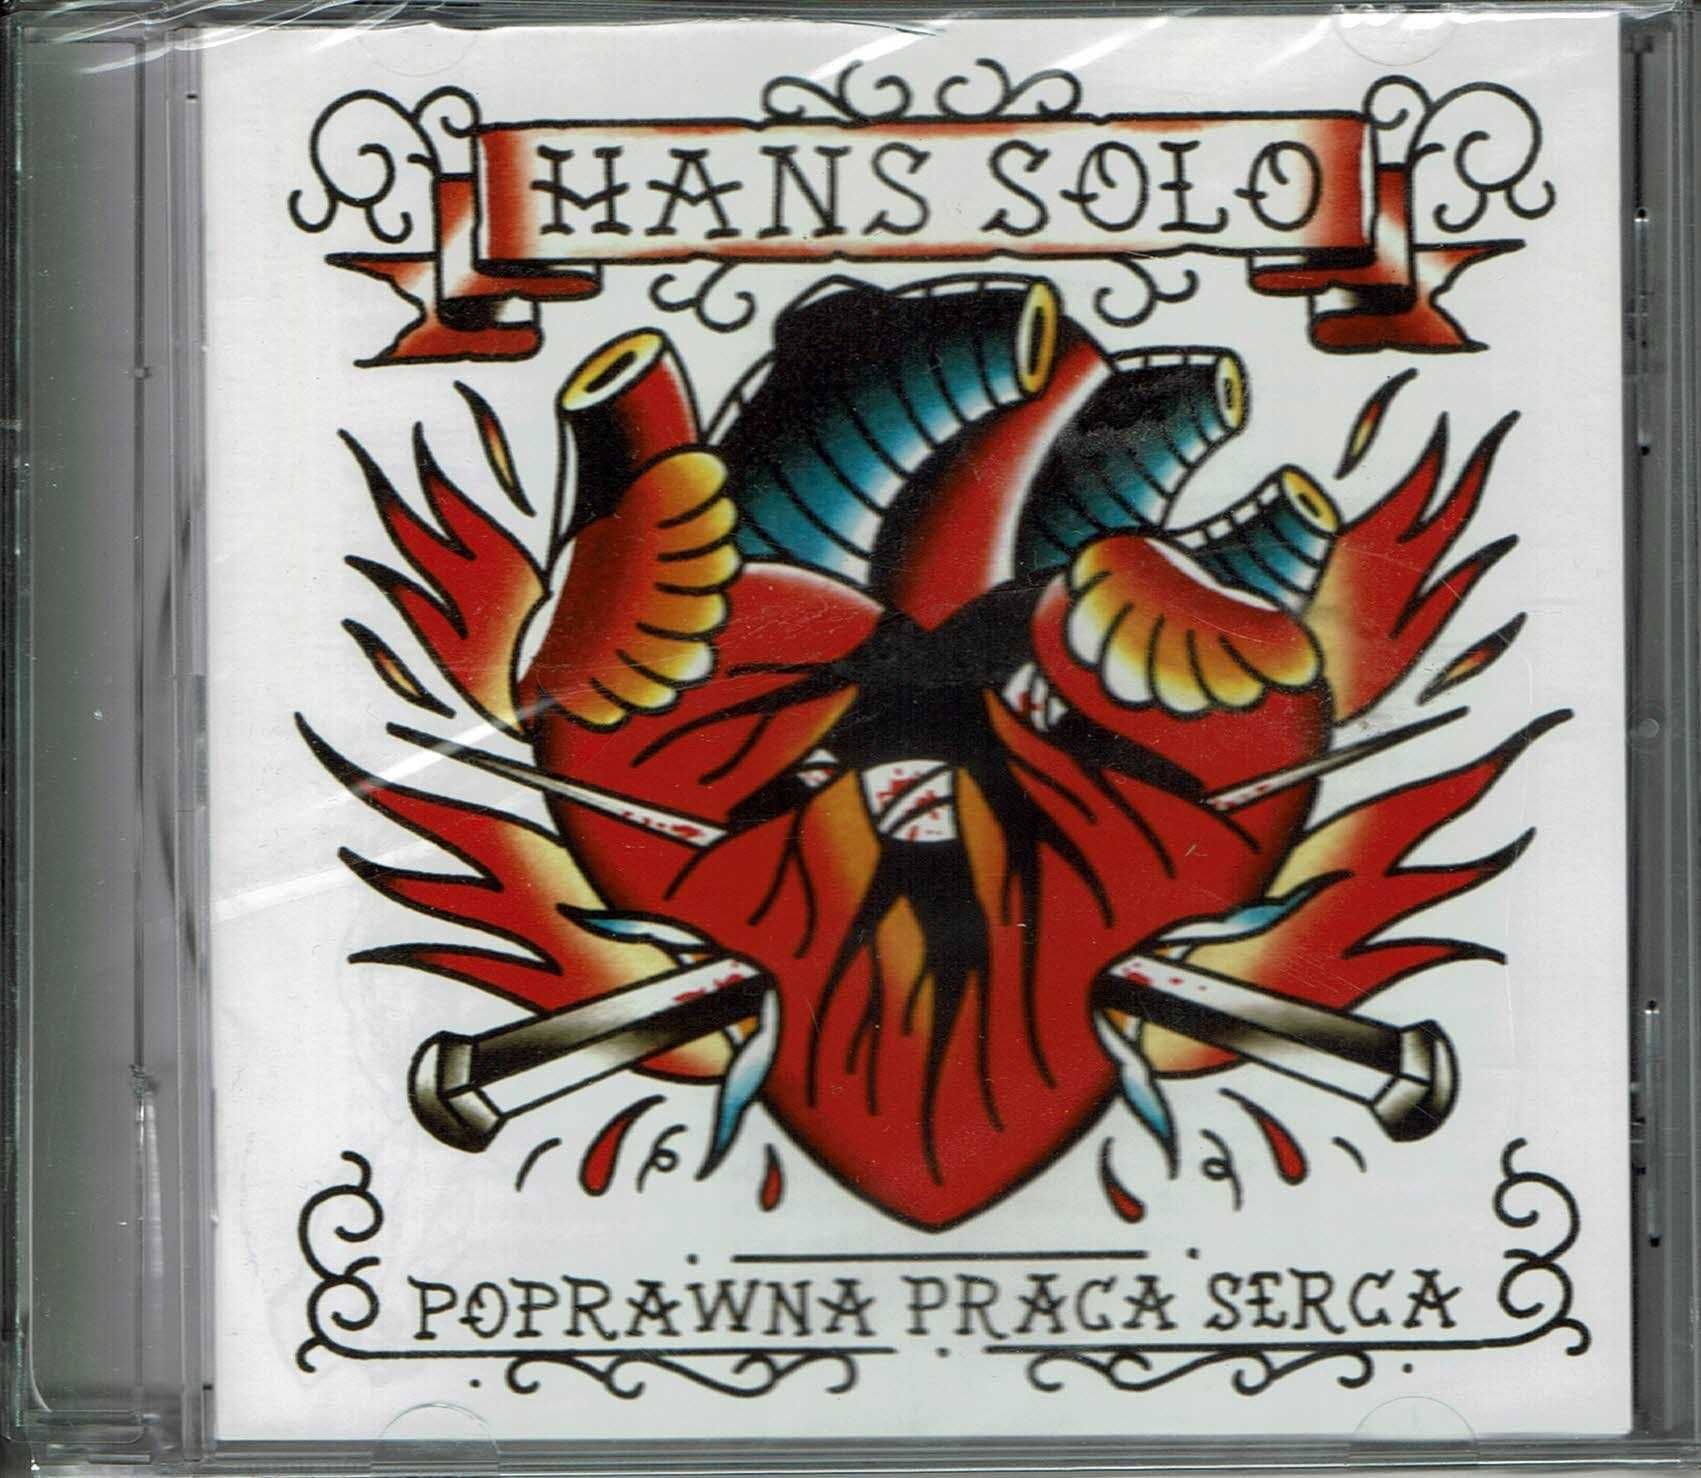 Hans Solo "Poprawna praca serca" CD (Nowa w folii)